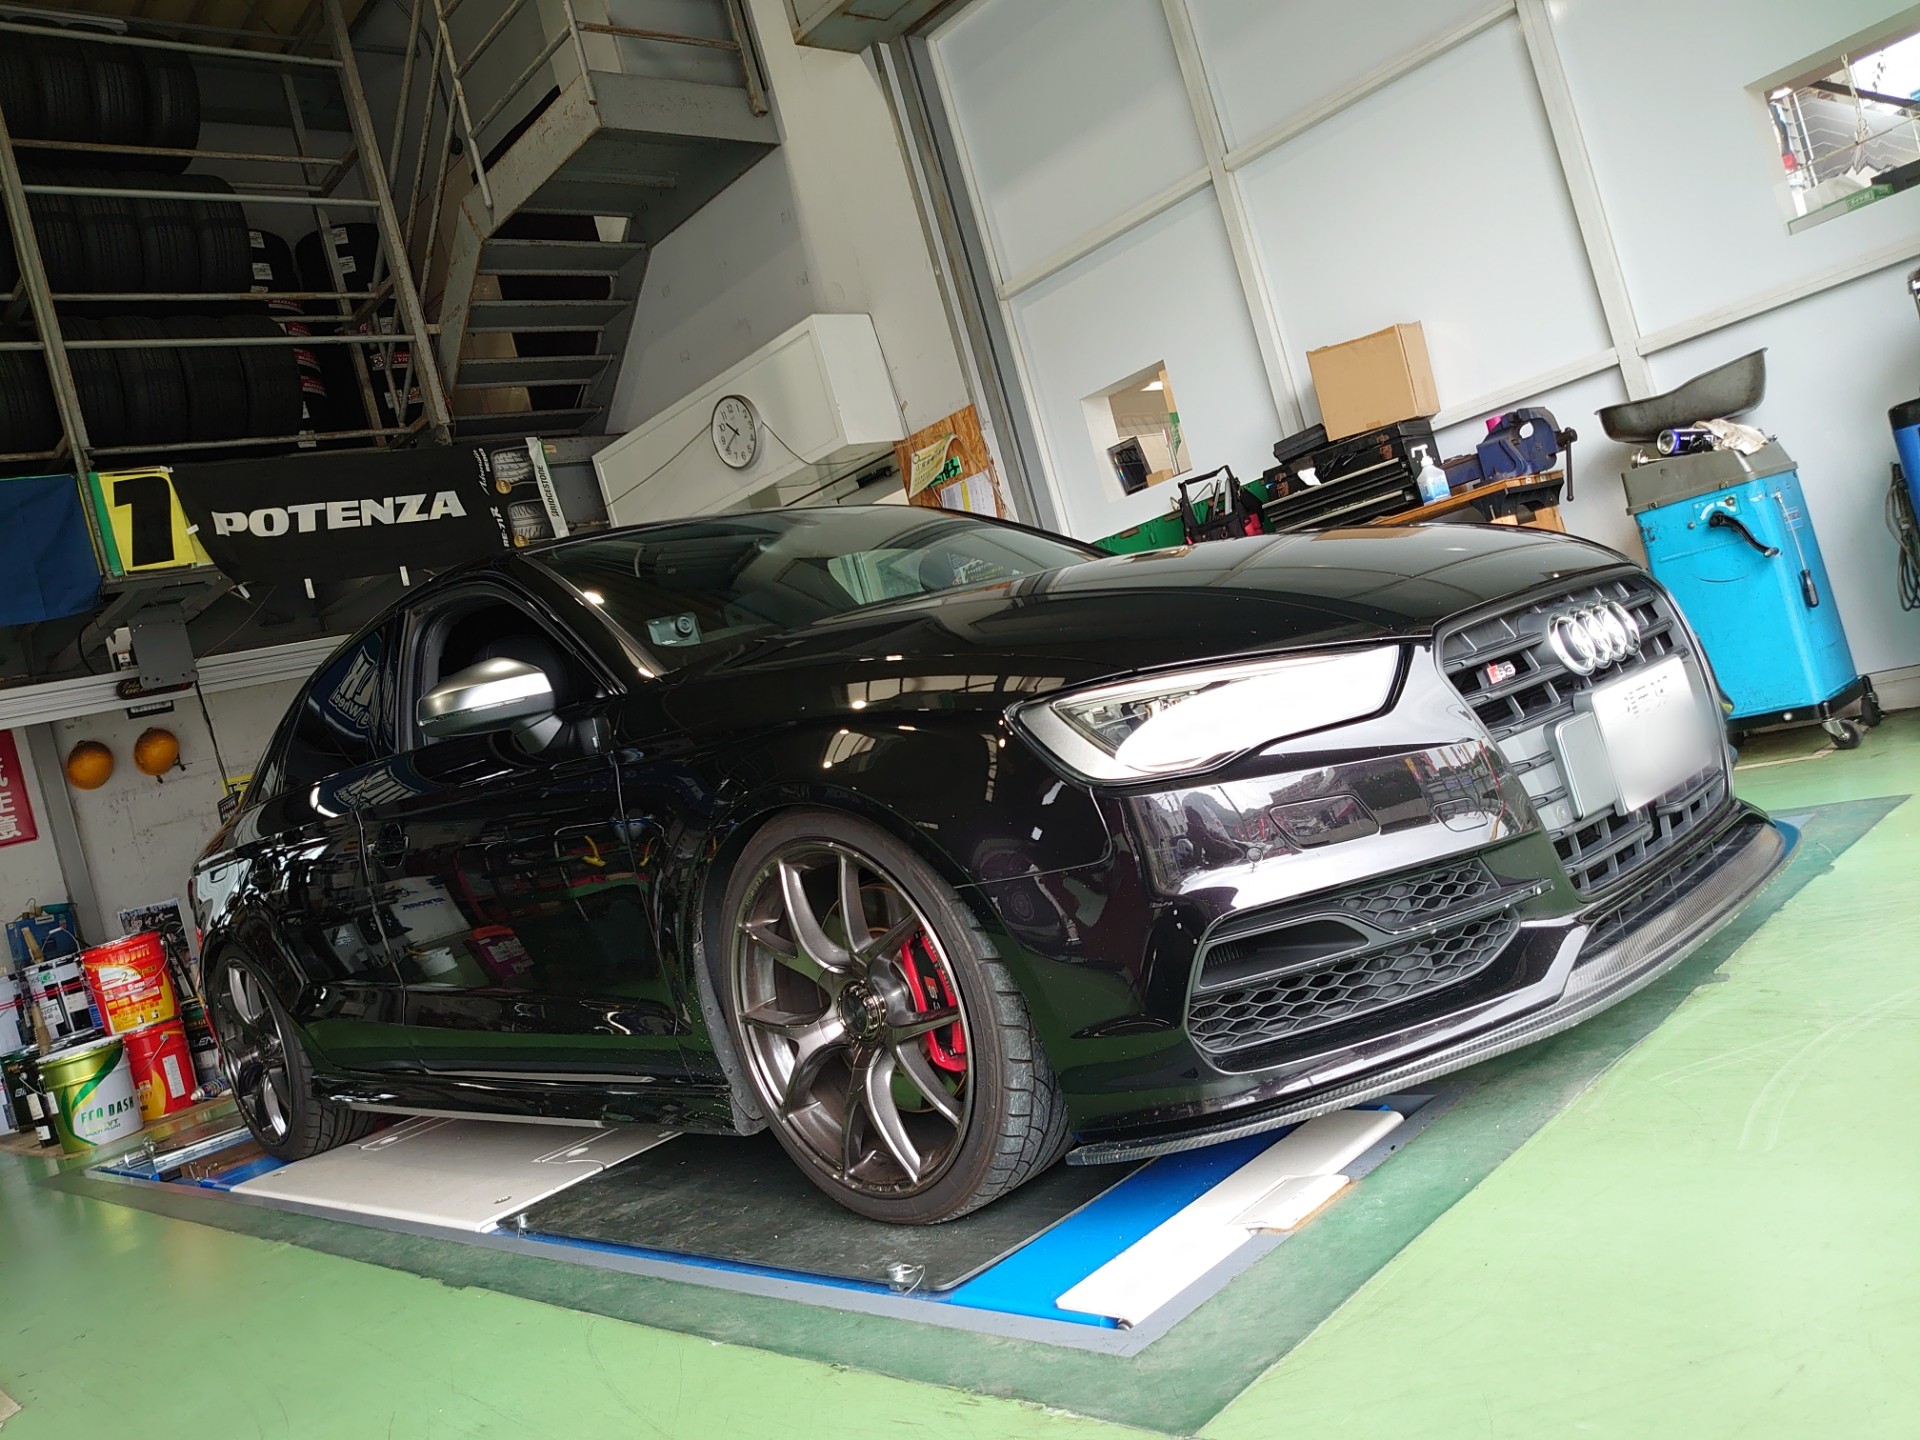 Audi S3 エンジン オイル交換しました アウディ S3 メンテナンス商品 オイル関連 エンジンオイル交換 技術サービス施工事例 タイヤ館 福岡東 タイヤからはじまる トータルカーメンテナンス タイヤ館グループ